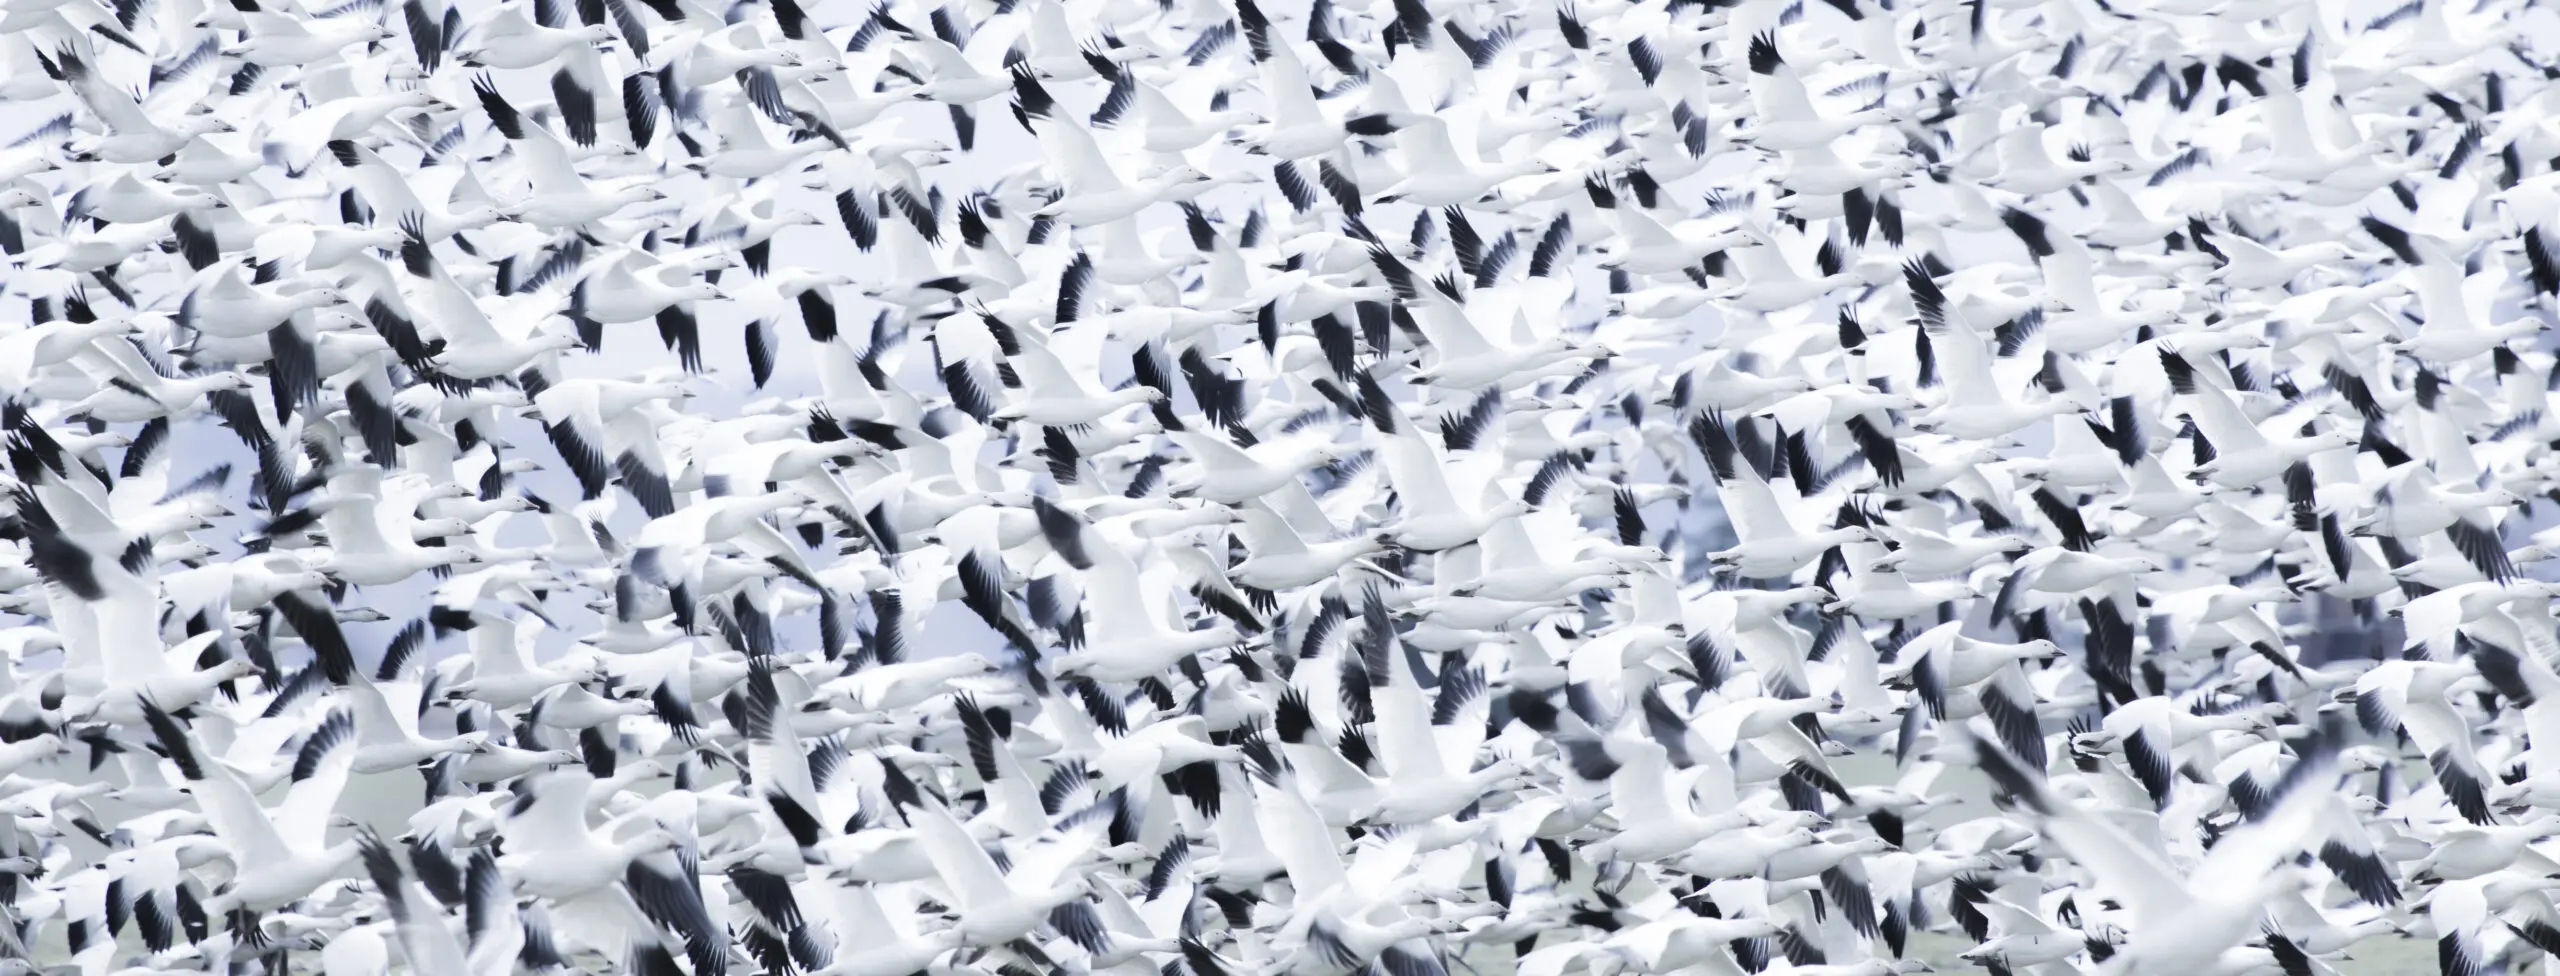 Wandbild (3001) Snowstorm präsentiert: Menschen,Tiere,Vögel